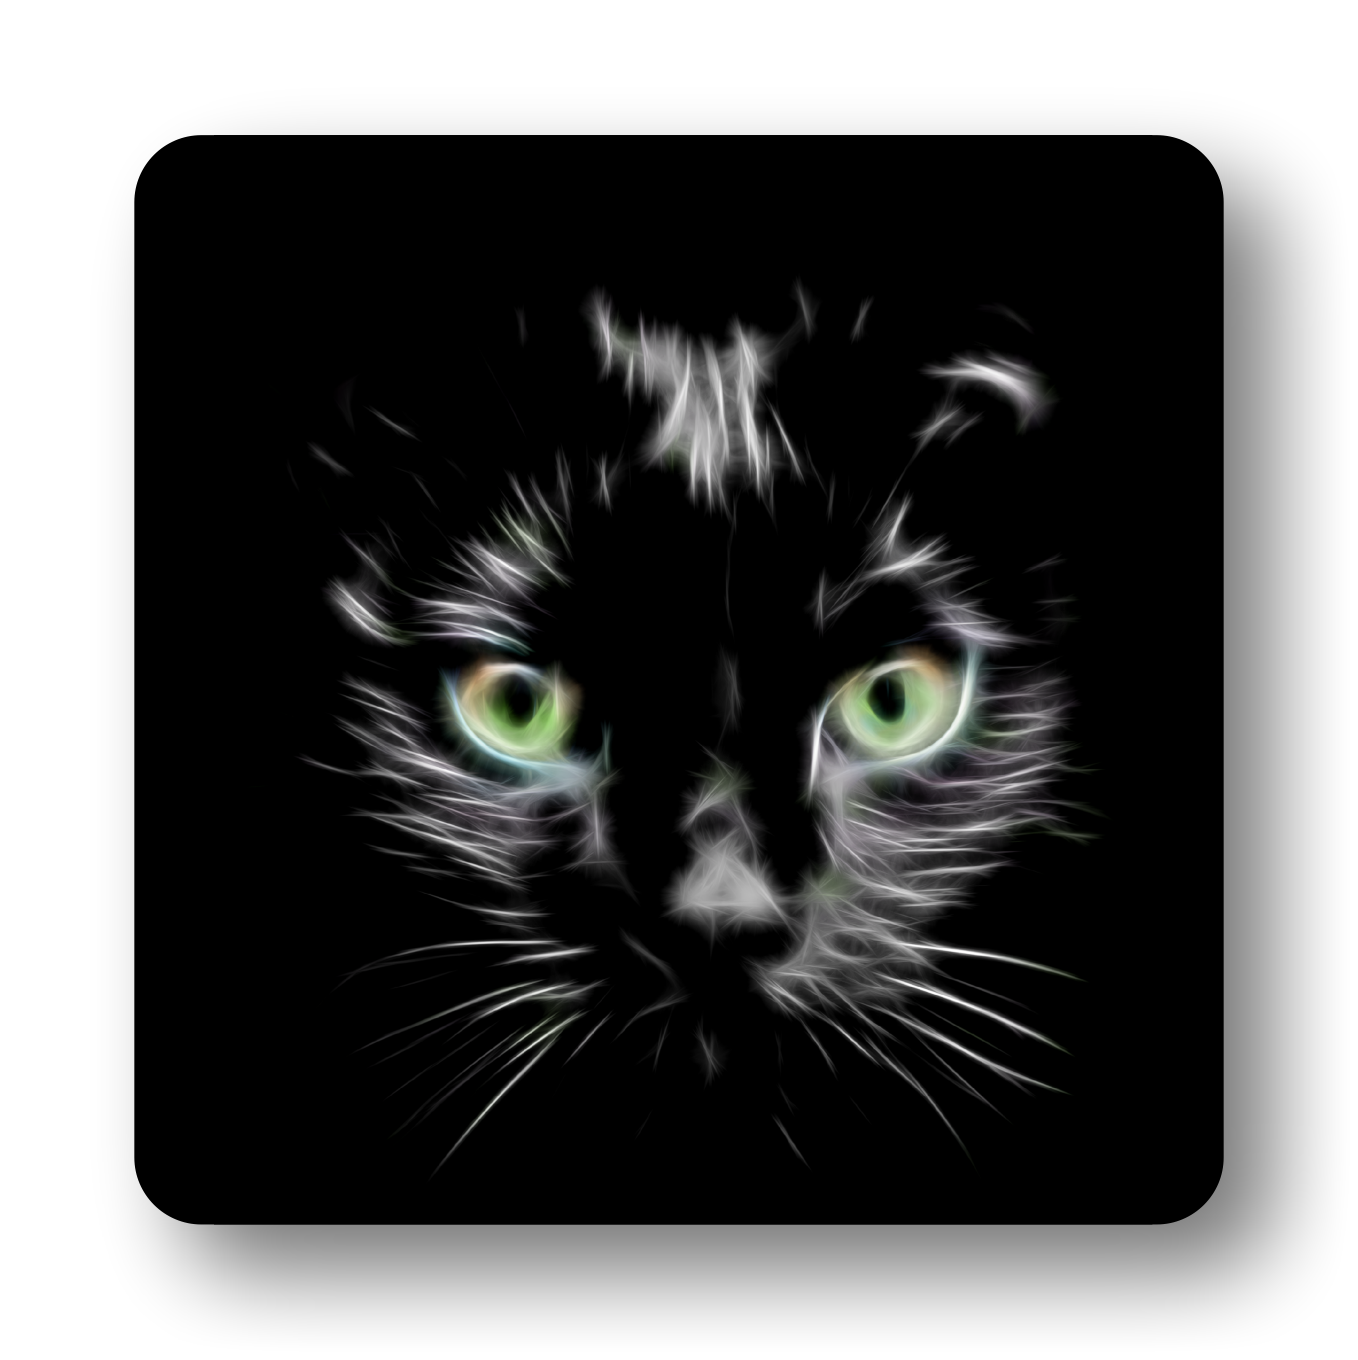 Green Eye Black Cat Coaster